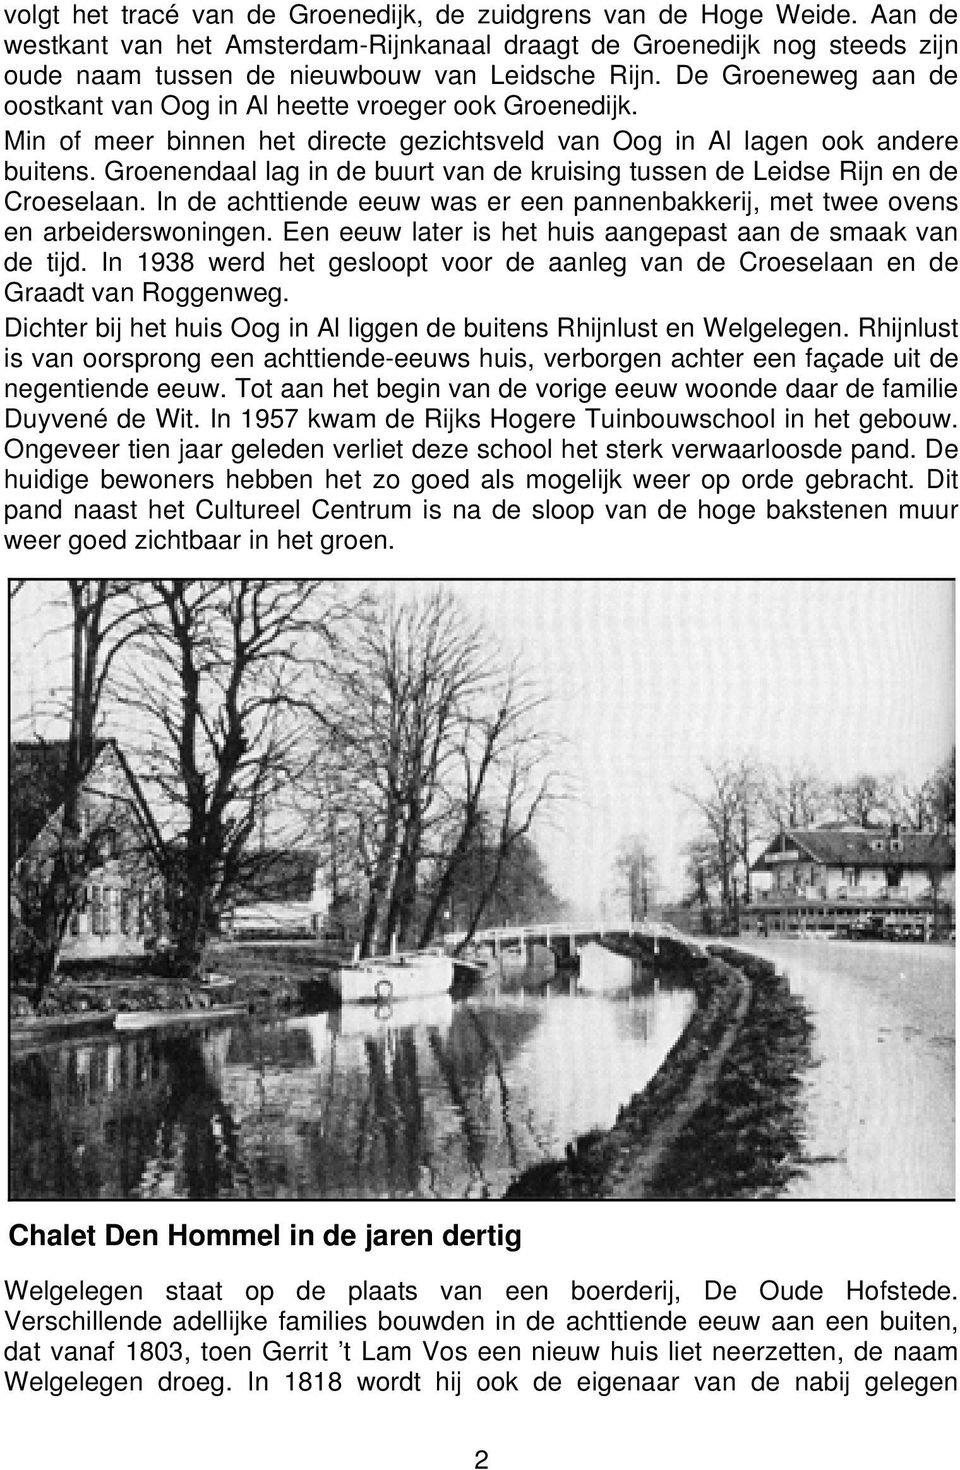 Groenendaal lag in de buurt van de kruising tussen de Leidse Rijn en de Croeselaan. In de achttiende eeuw was er een pannenbakkerij, met twee ovens en arbeiderswoningen.